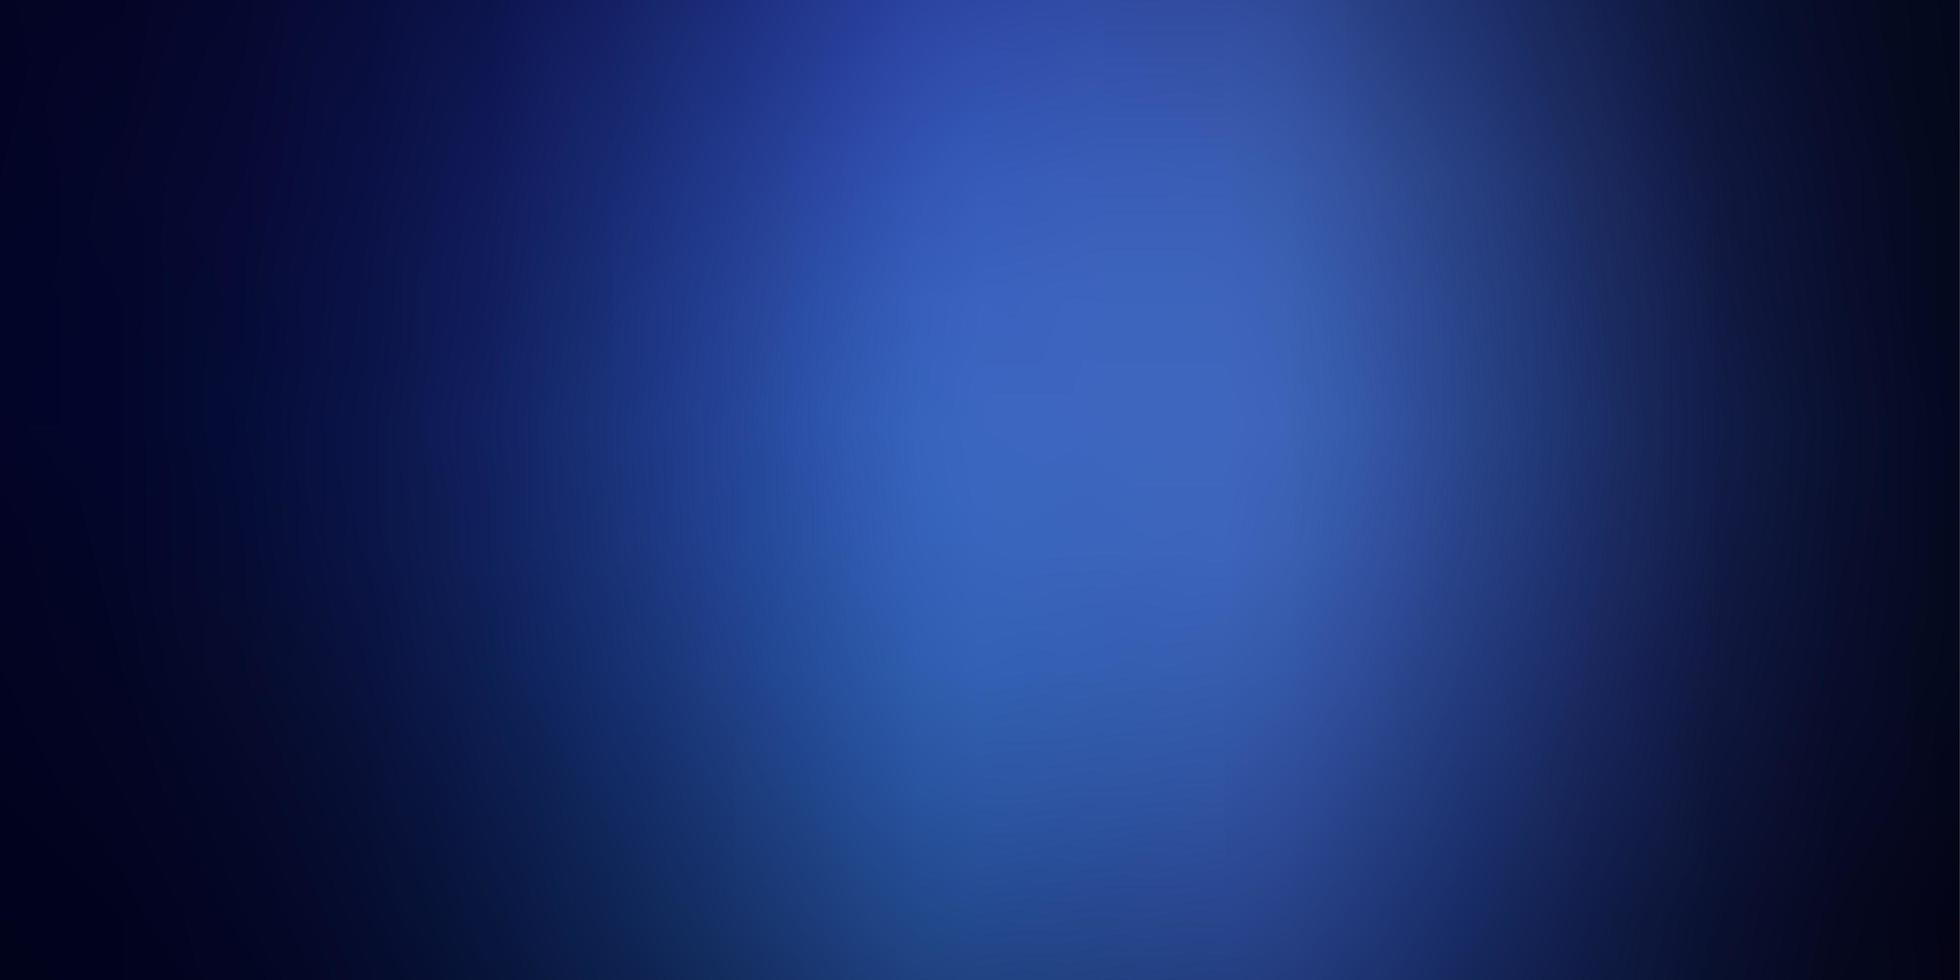 sfondo astratto colorato vettoriale blu scuro.